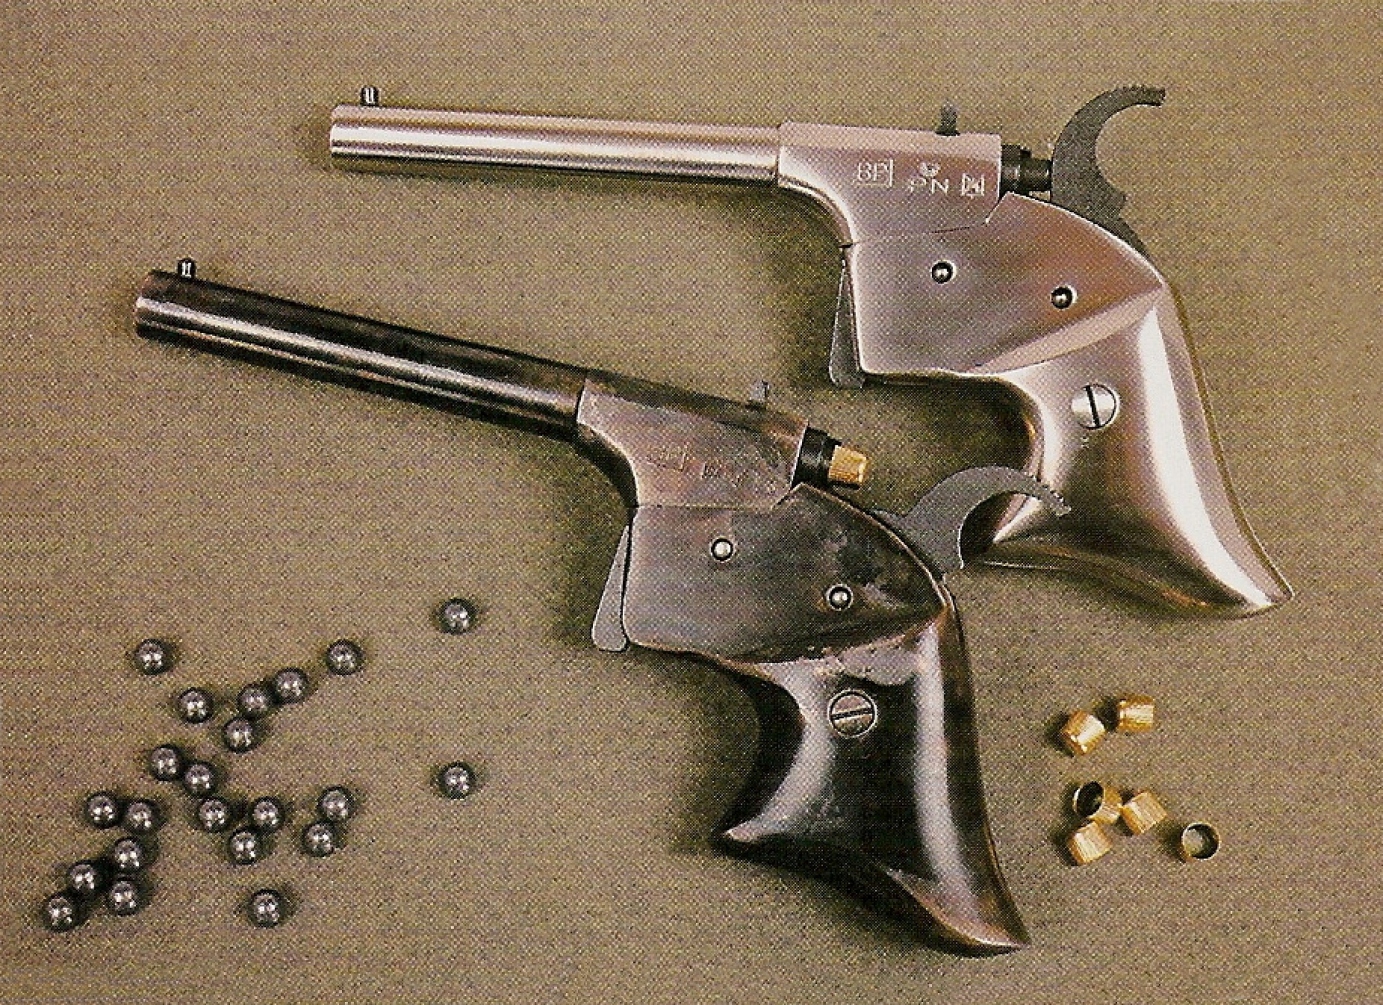 Ce pistolet dessiné par Joseph Rider en 1859 est un modèle de taille extrêmement réduite, pour ne pas dire miniaturisée. Sa réplique est proposée en deux versions, qui diffèrent uniquement par leur finition : jaspée ou nickelée.